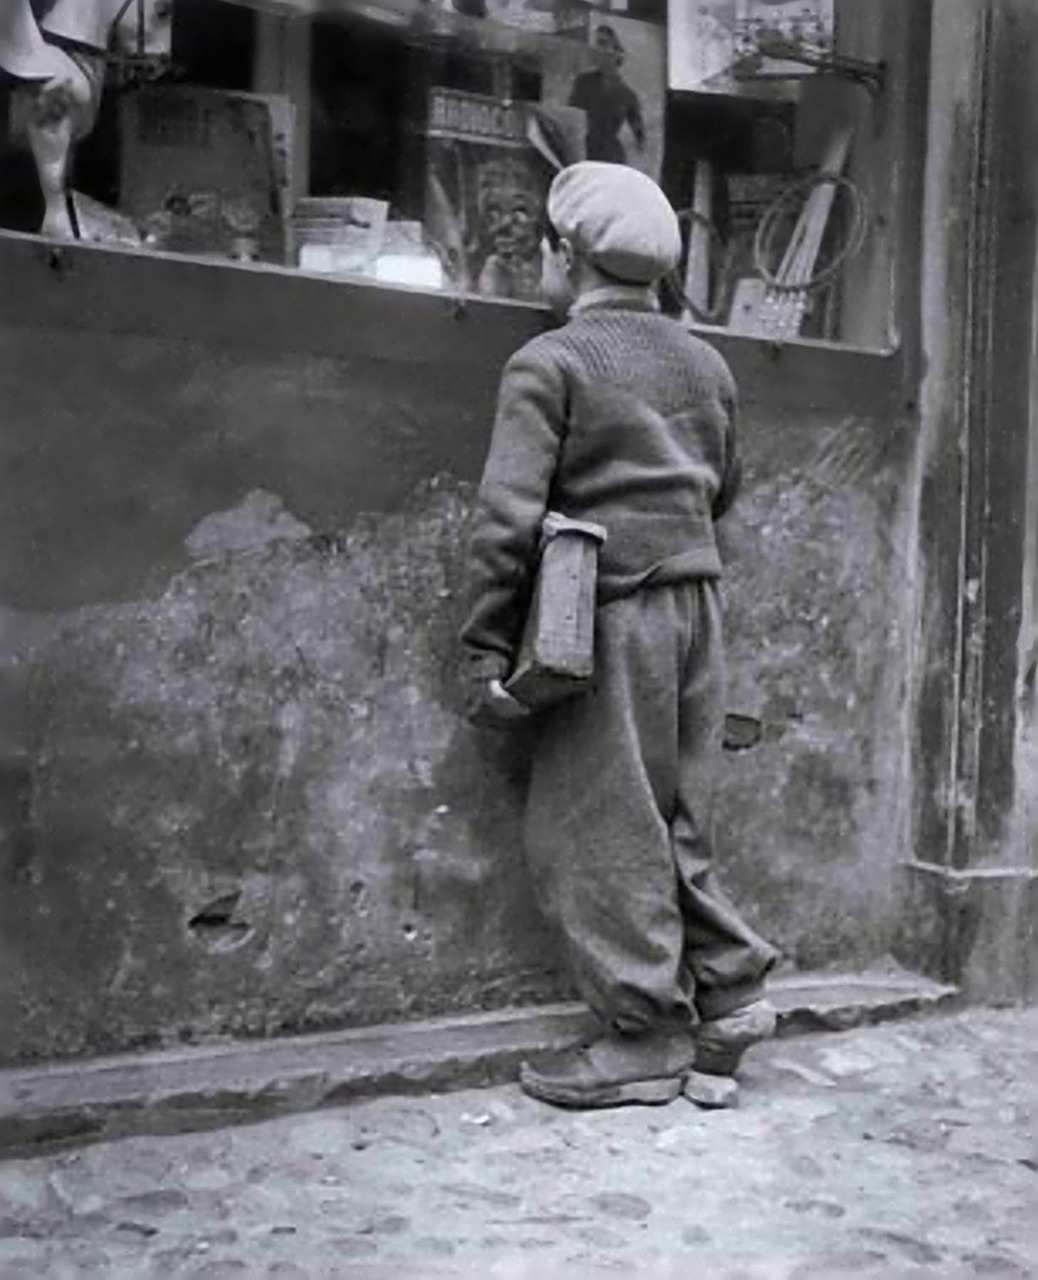 Enrico Pasquali
Comacchio, Bambino che guarda una vetrina di giocattoli, 1955
Thanks to undr